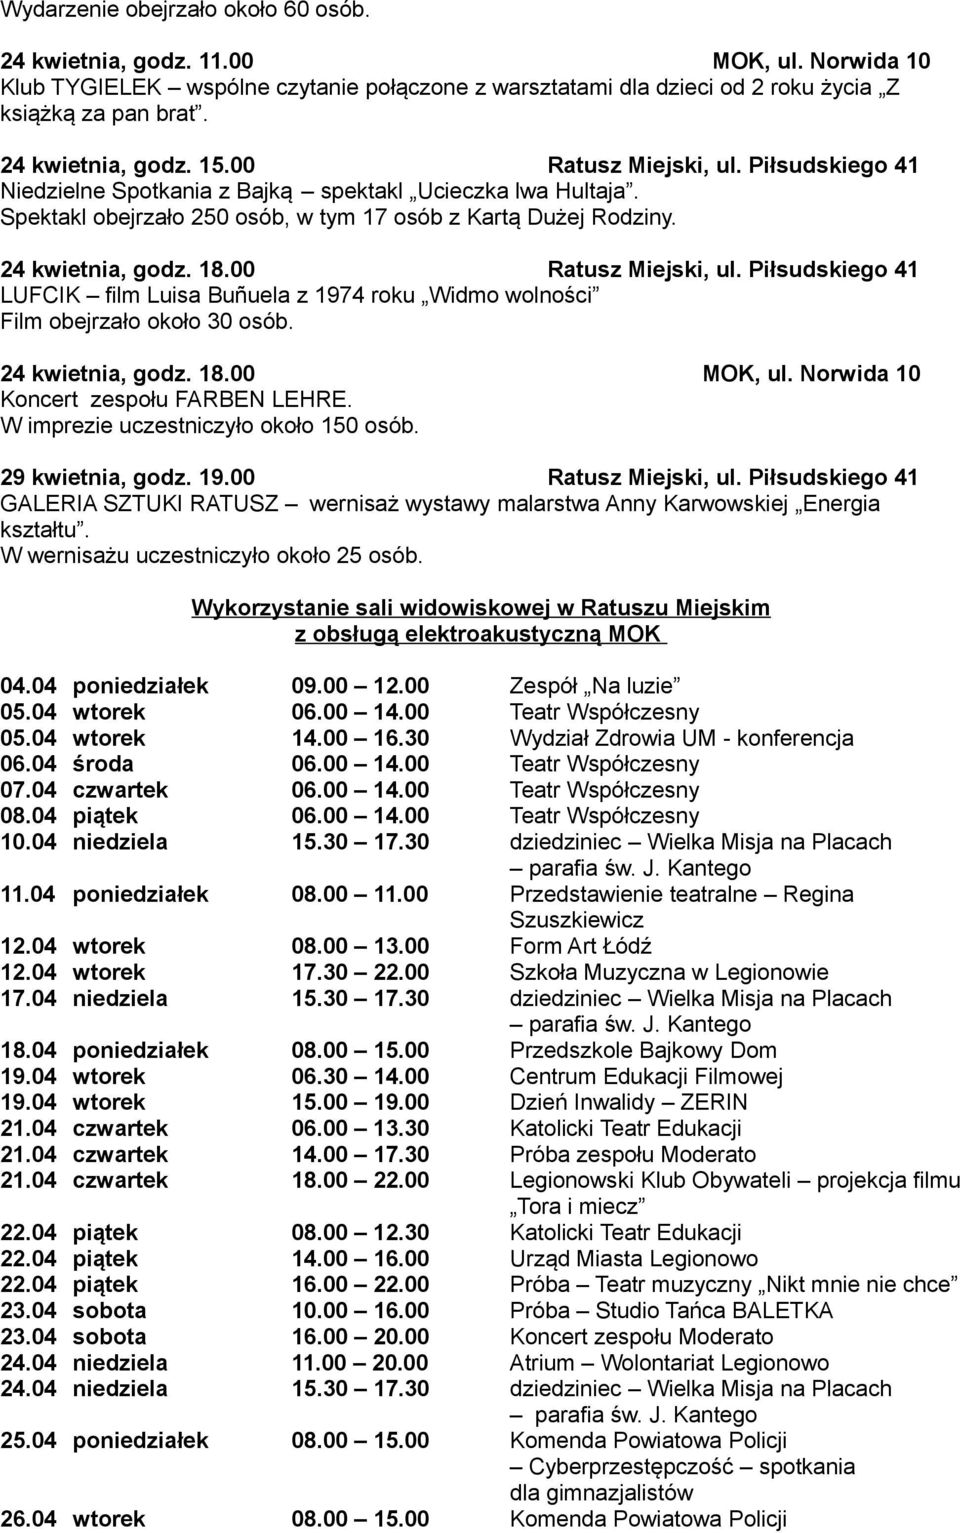 24 kwietnia, godz. 18.00 Ratusz Miejski, ul. Piłsudskiego 41 LUFCIK film Luisa Bunuela z 1974 roku Widmo wolności Film obejrzało około 30 osób. 24 kwietnia, godz. 18.00 MOK, ul.